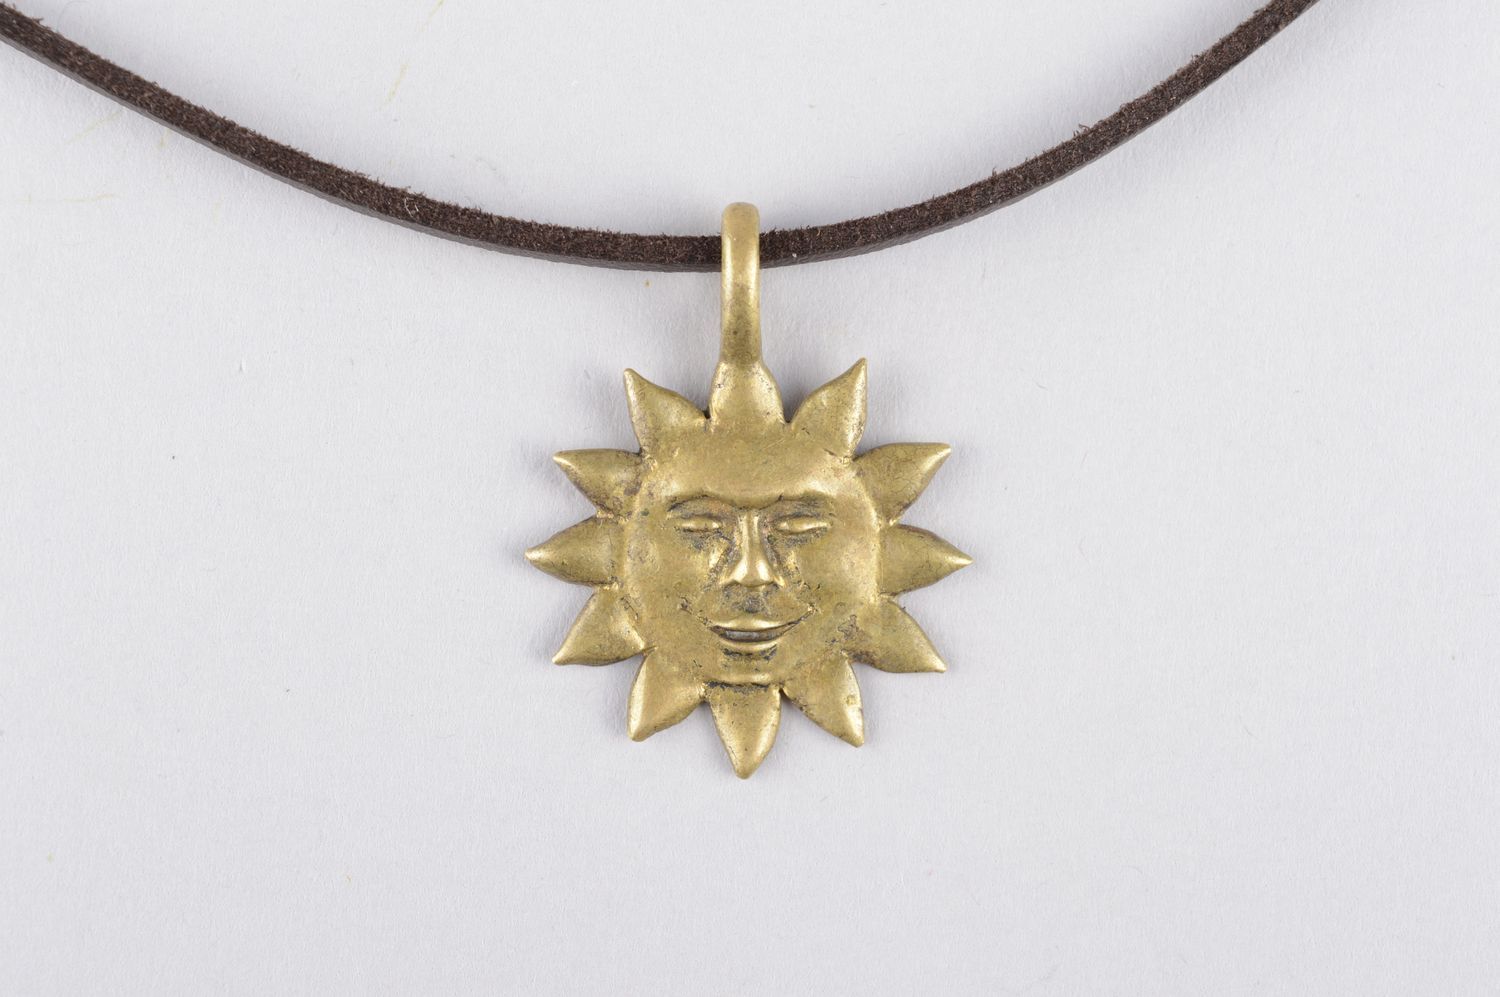 Handmade accessories bronze necklace metal pendant bronze jewelry unusual gift  photo 5